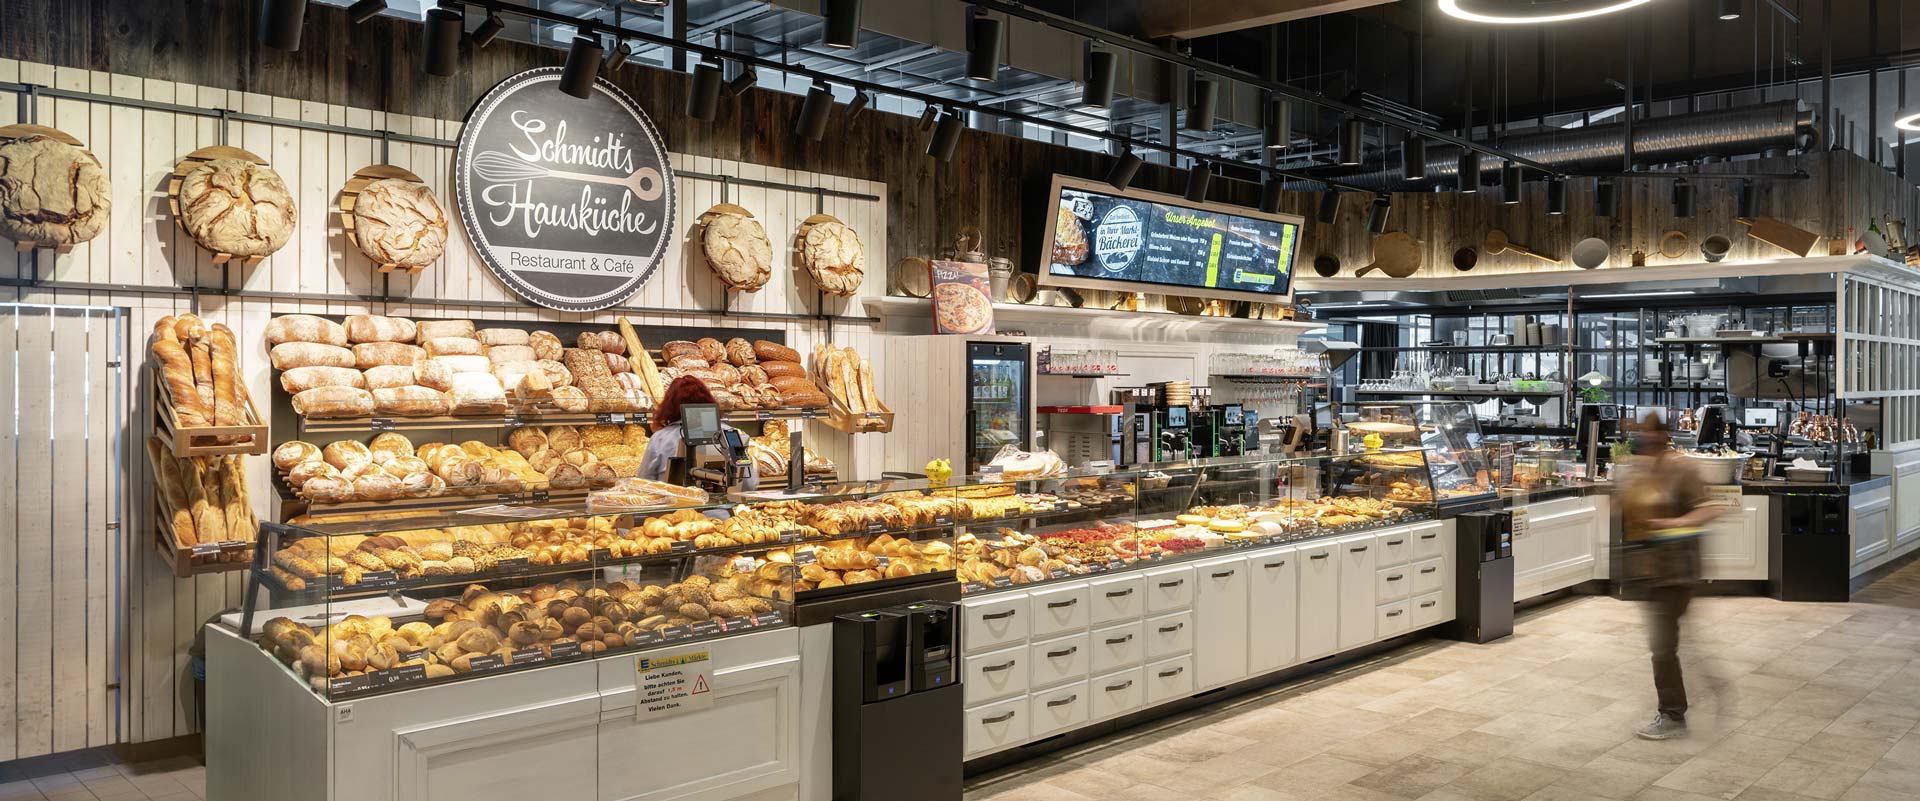 Mostrador de productos de panadería y bollería fresca iluminado con proyectores Canilo visualizando la zona de restauración.